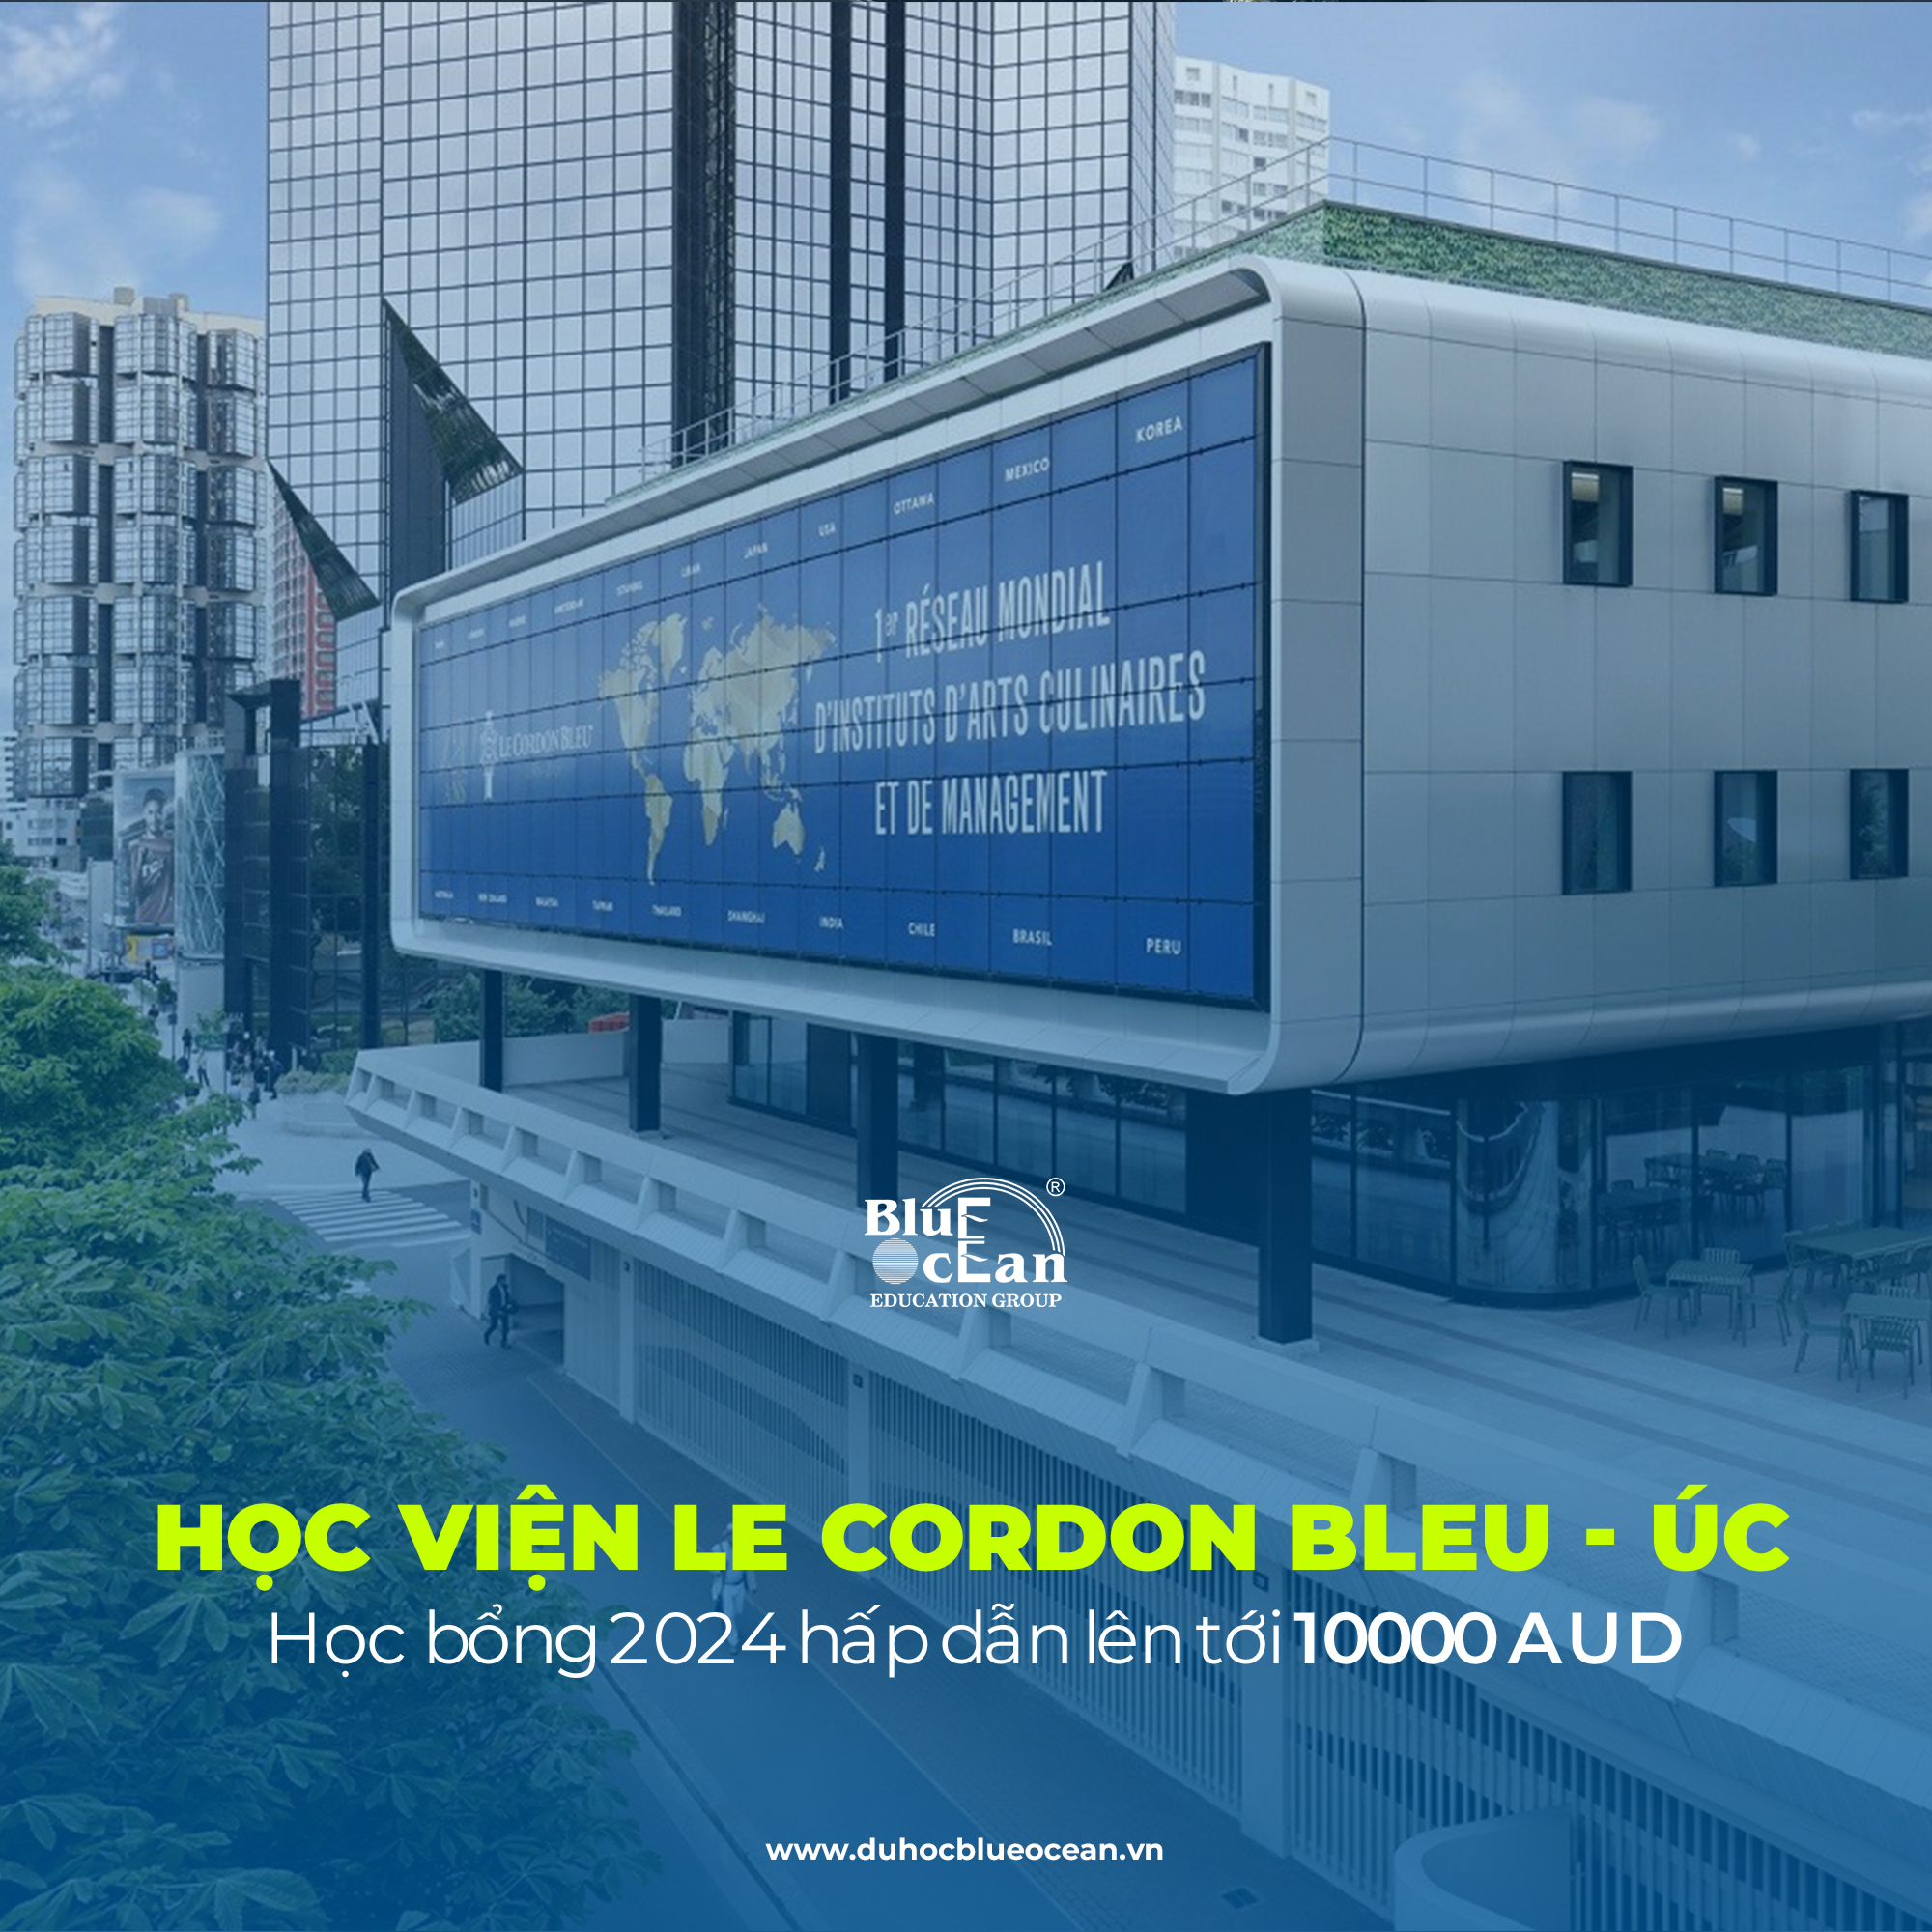 Học viện LE CORDON BLEU ÚC - Học bổng hấp dẫn lên tới 10000 AUD